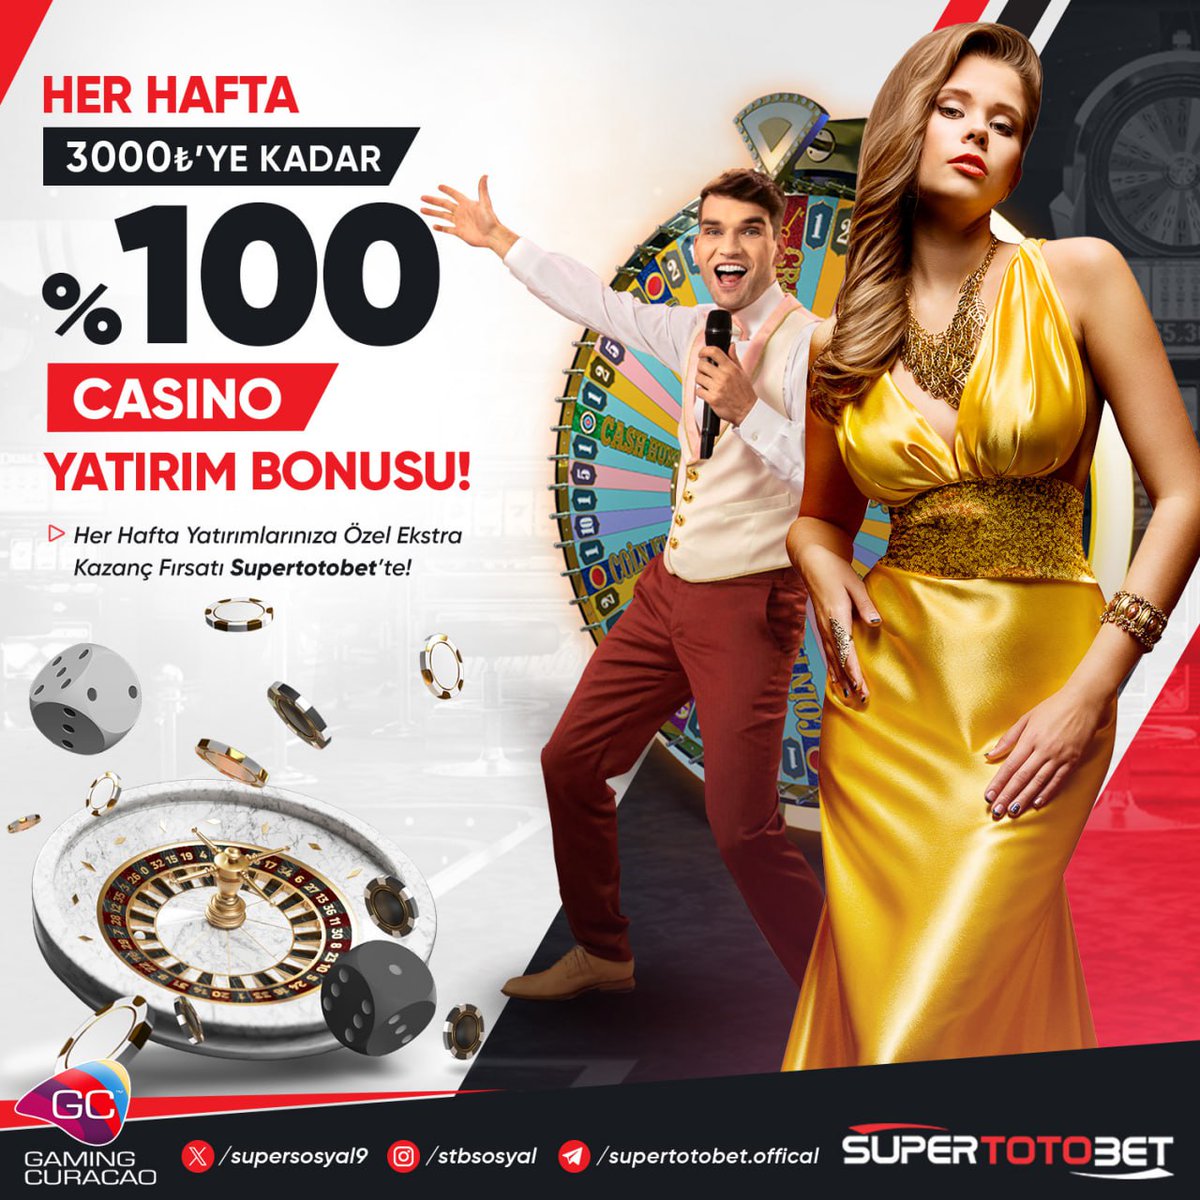 📢Yeni Haftaya Yeni Başlangıç 💵Yeni Haftaya Canlı Casinoda 🏆Yatırdığın Kadar Bonus Al ! ✔️3.000 TL'ye Varan %100 🎲Yatırım Bonusu Kazan ! 🌐Güncel Giriş: SUPERTOTOBET (cutt.ly/j7GYocc)